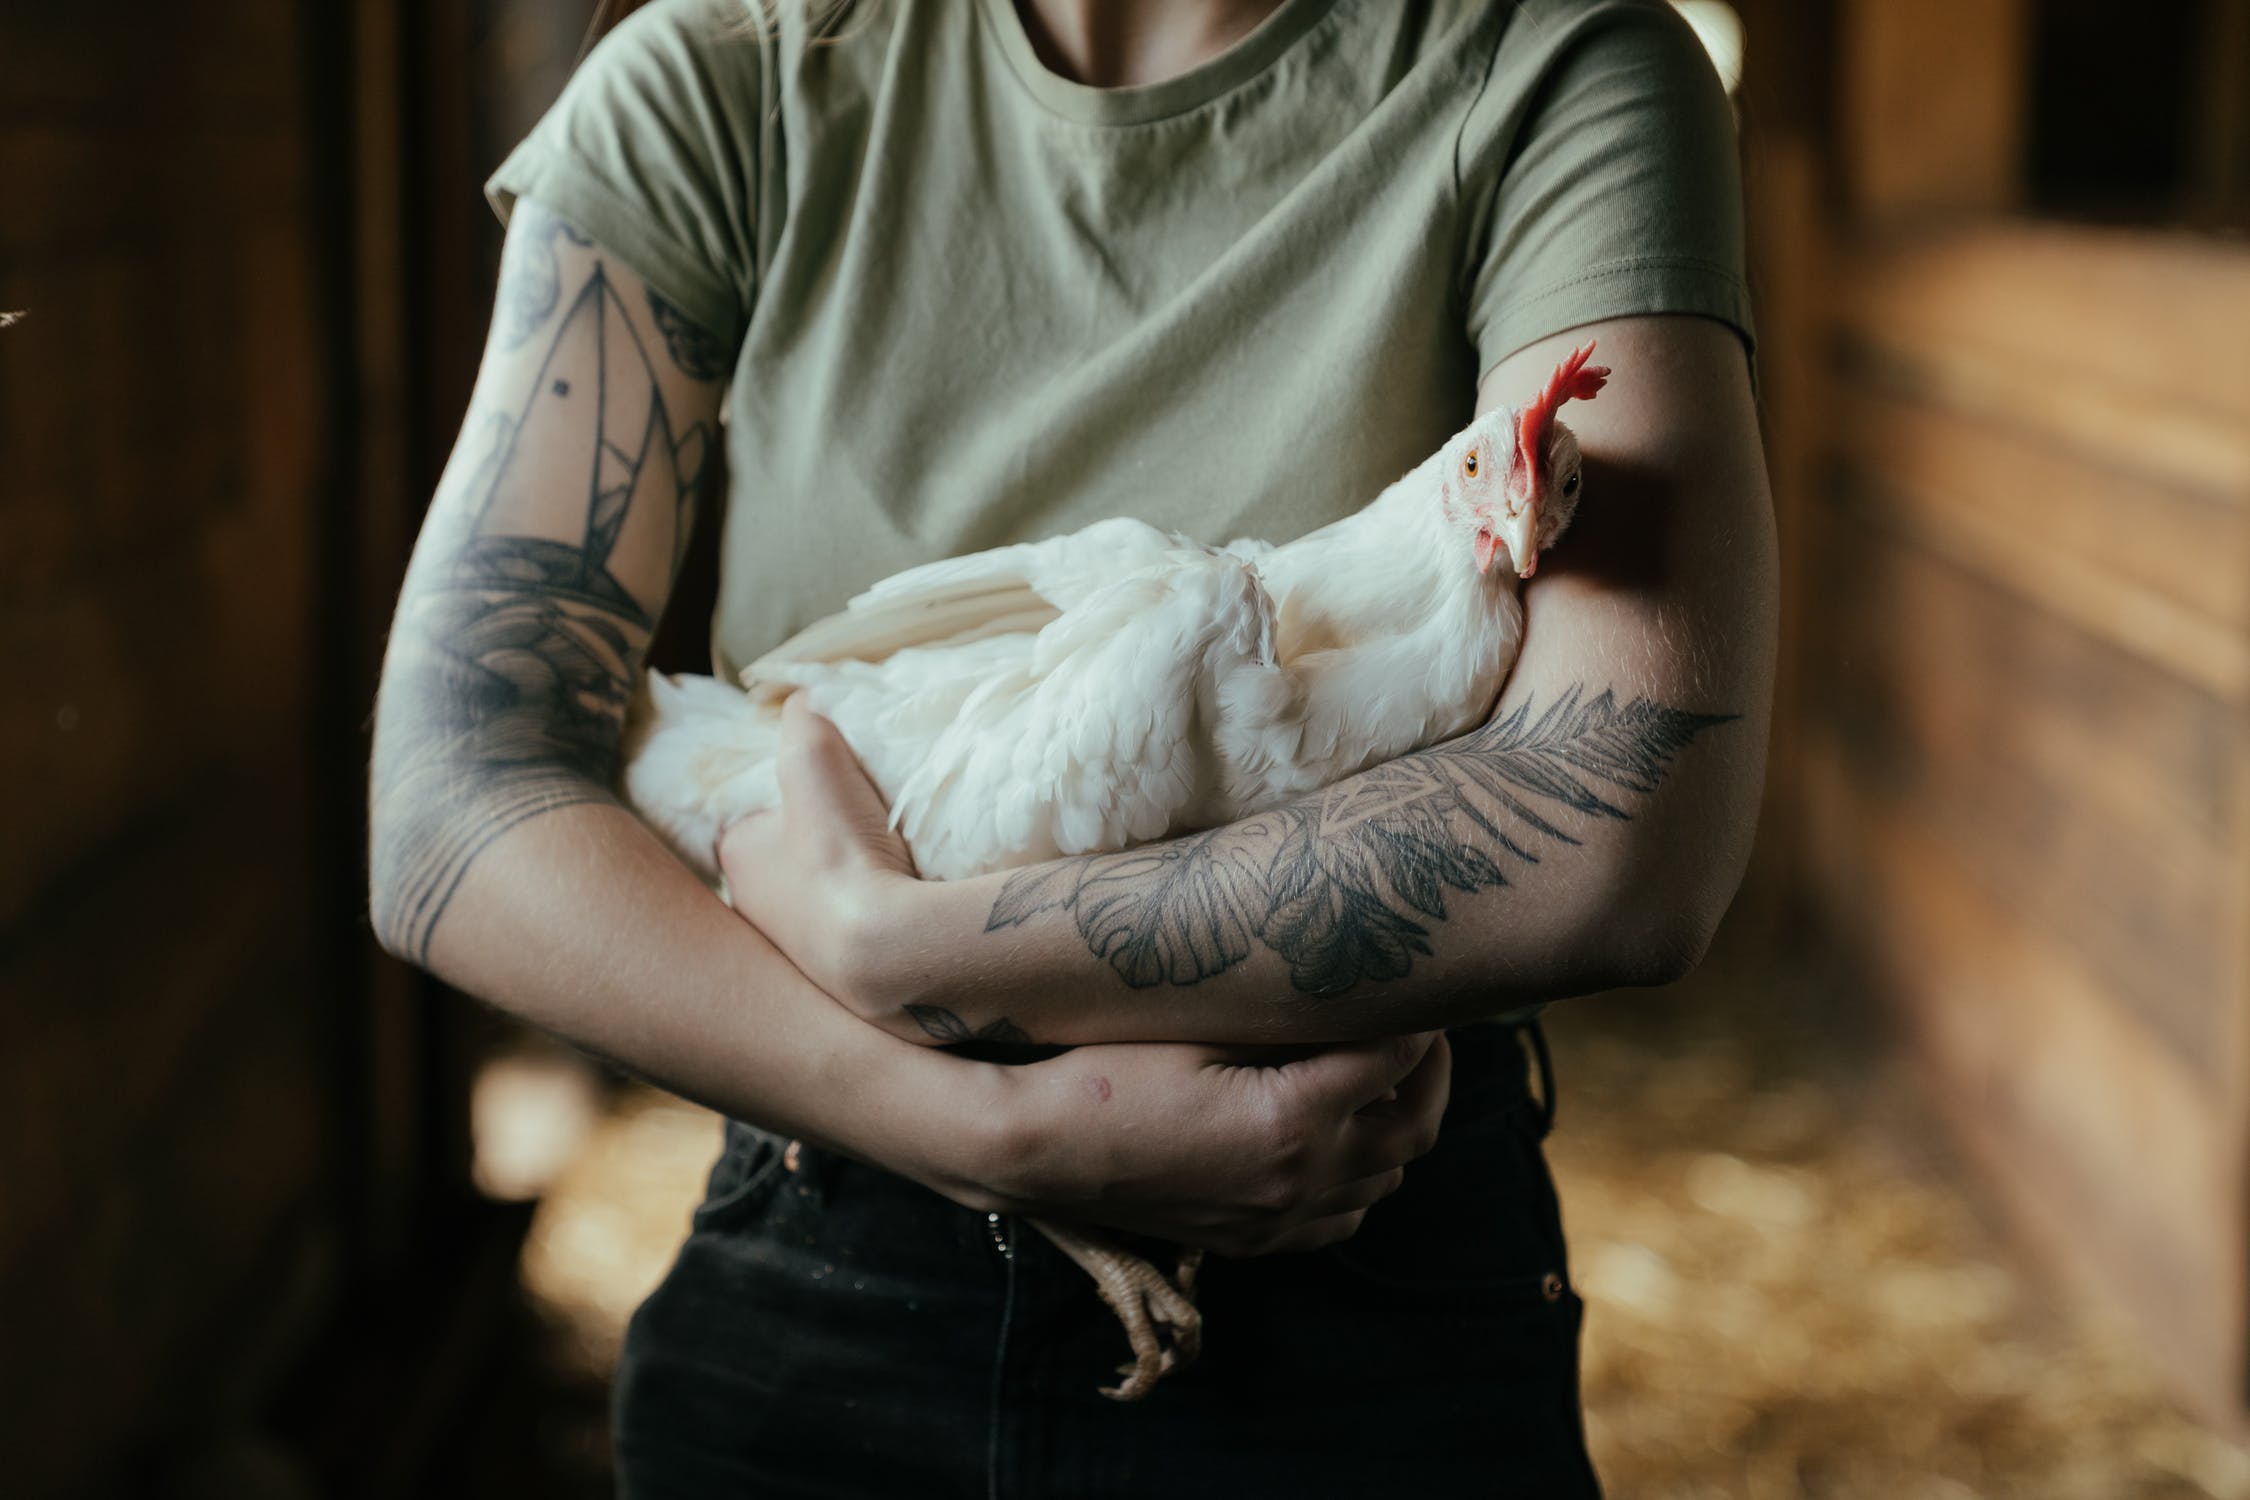 Poulty Farmer